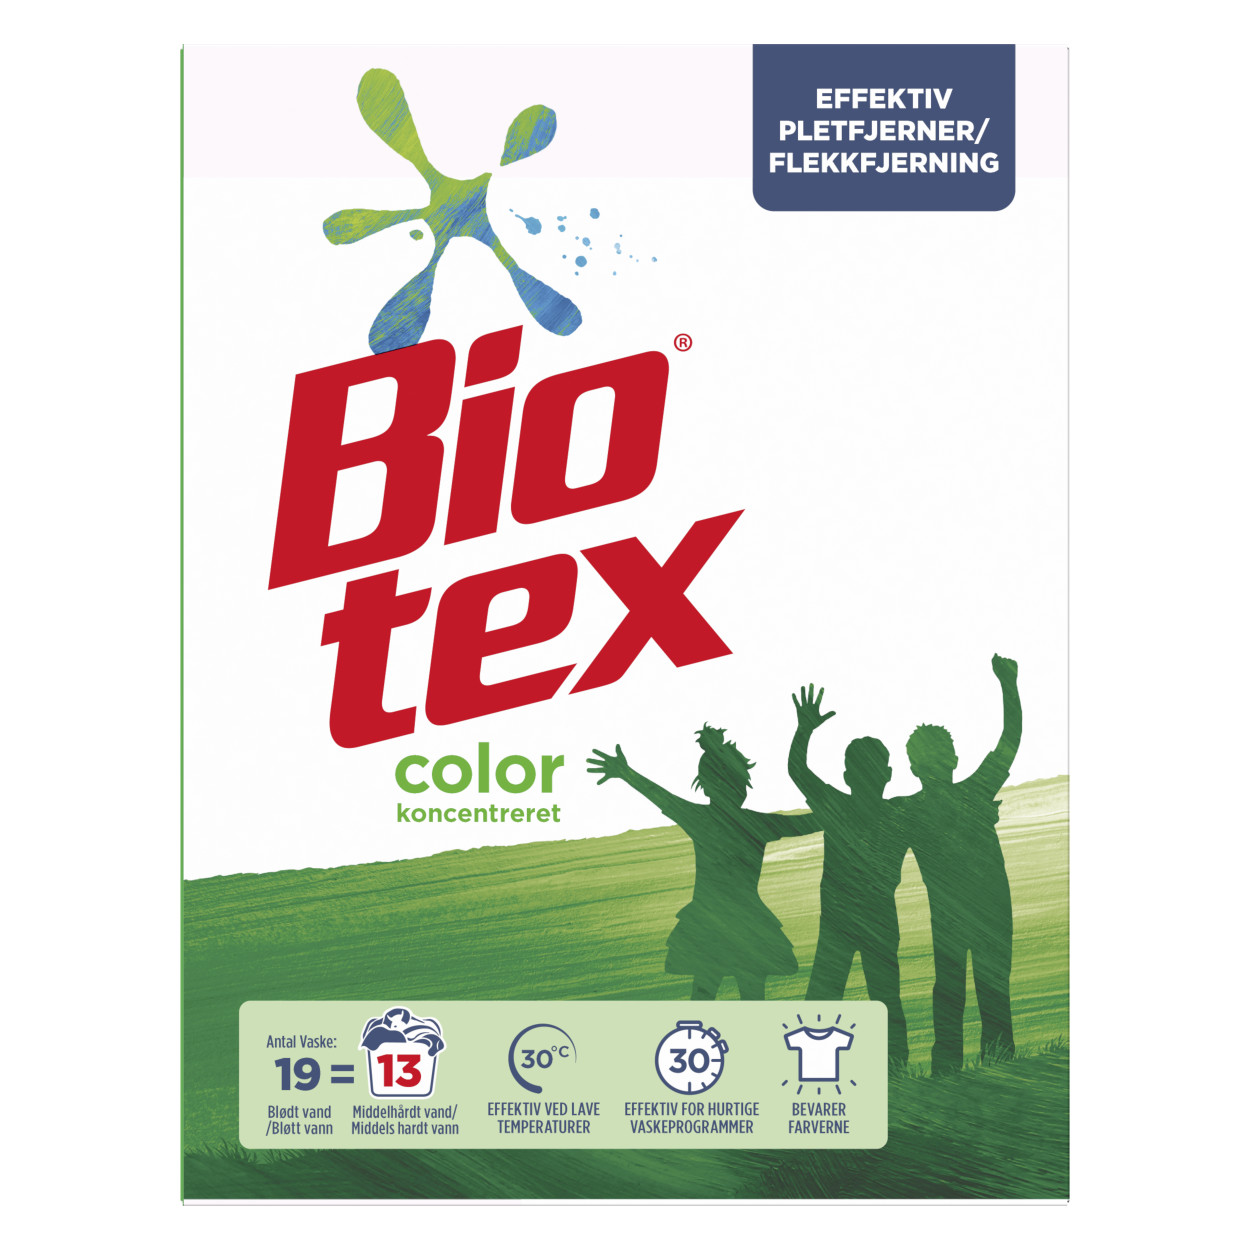 Bio-tex Color Koncentreret Vaskepulver packshot